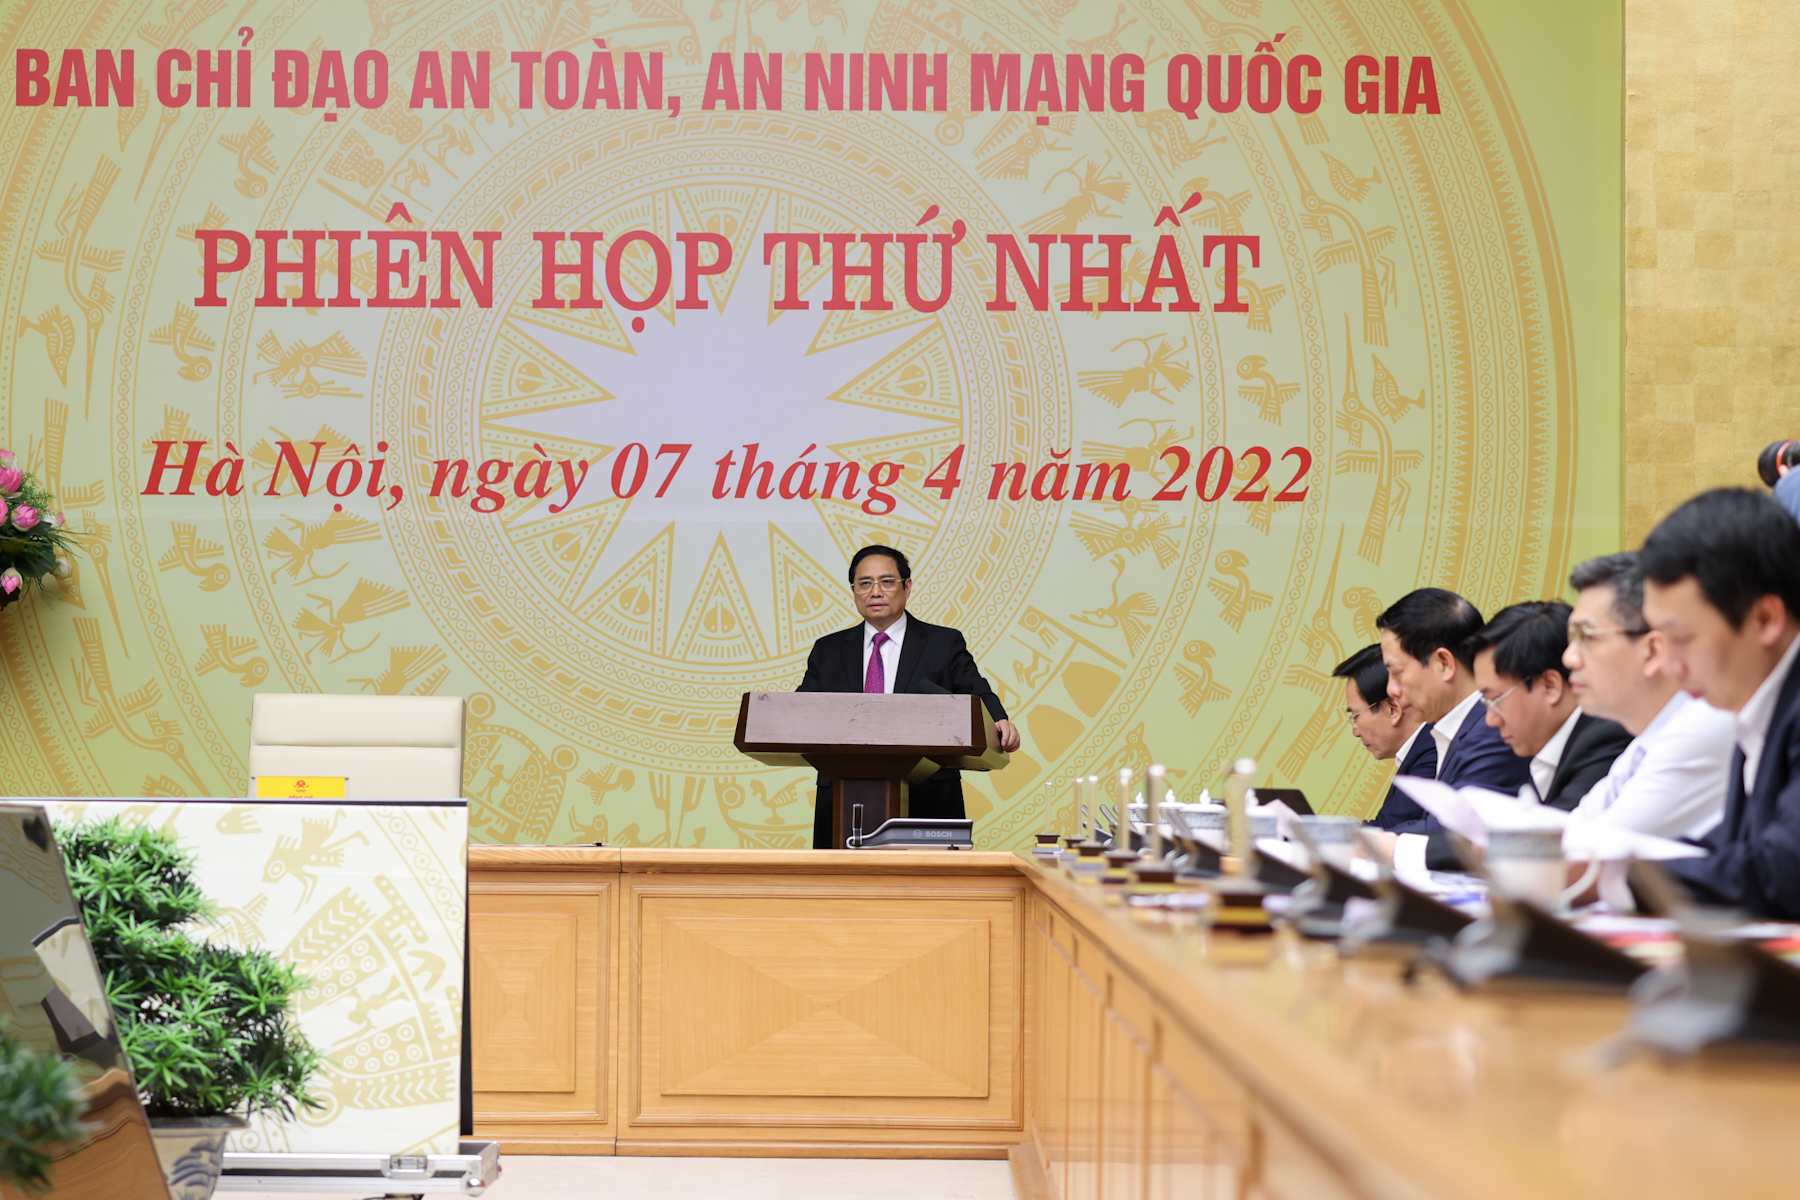 Thủ tướng Phạm Minh Chính: Chủ động bảo vệ độc lập, chủ quyền quốc gia, an toàn, an ninh trên không gian mạng - Ảnh 1.